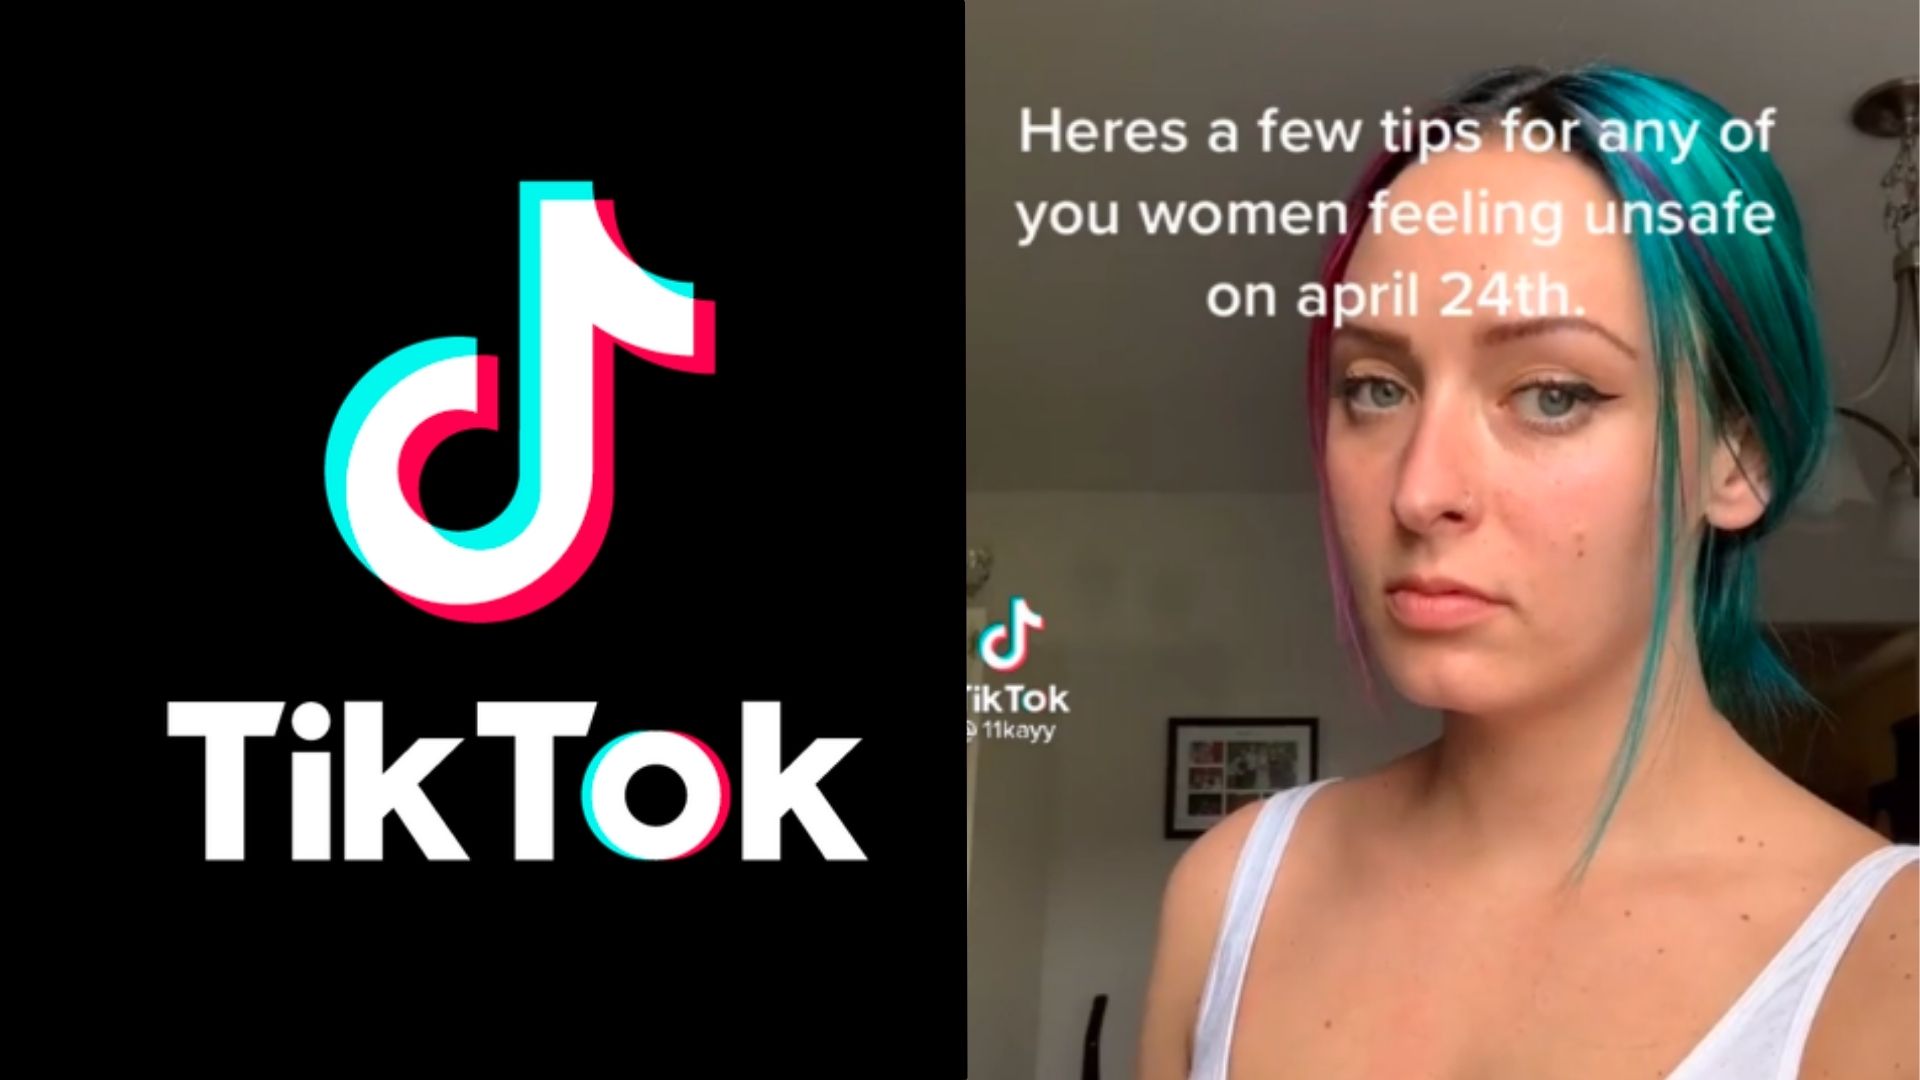 팁을위한 캡션이있는 화면을보고있는 여자와 함께 Tiktok 로고